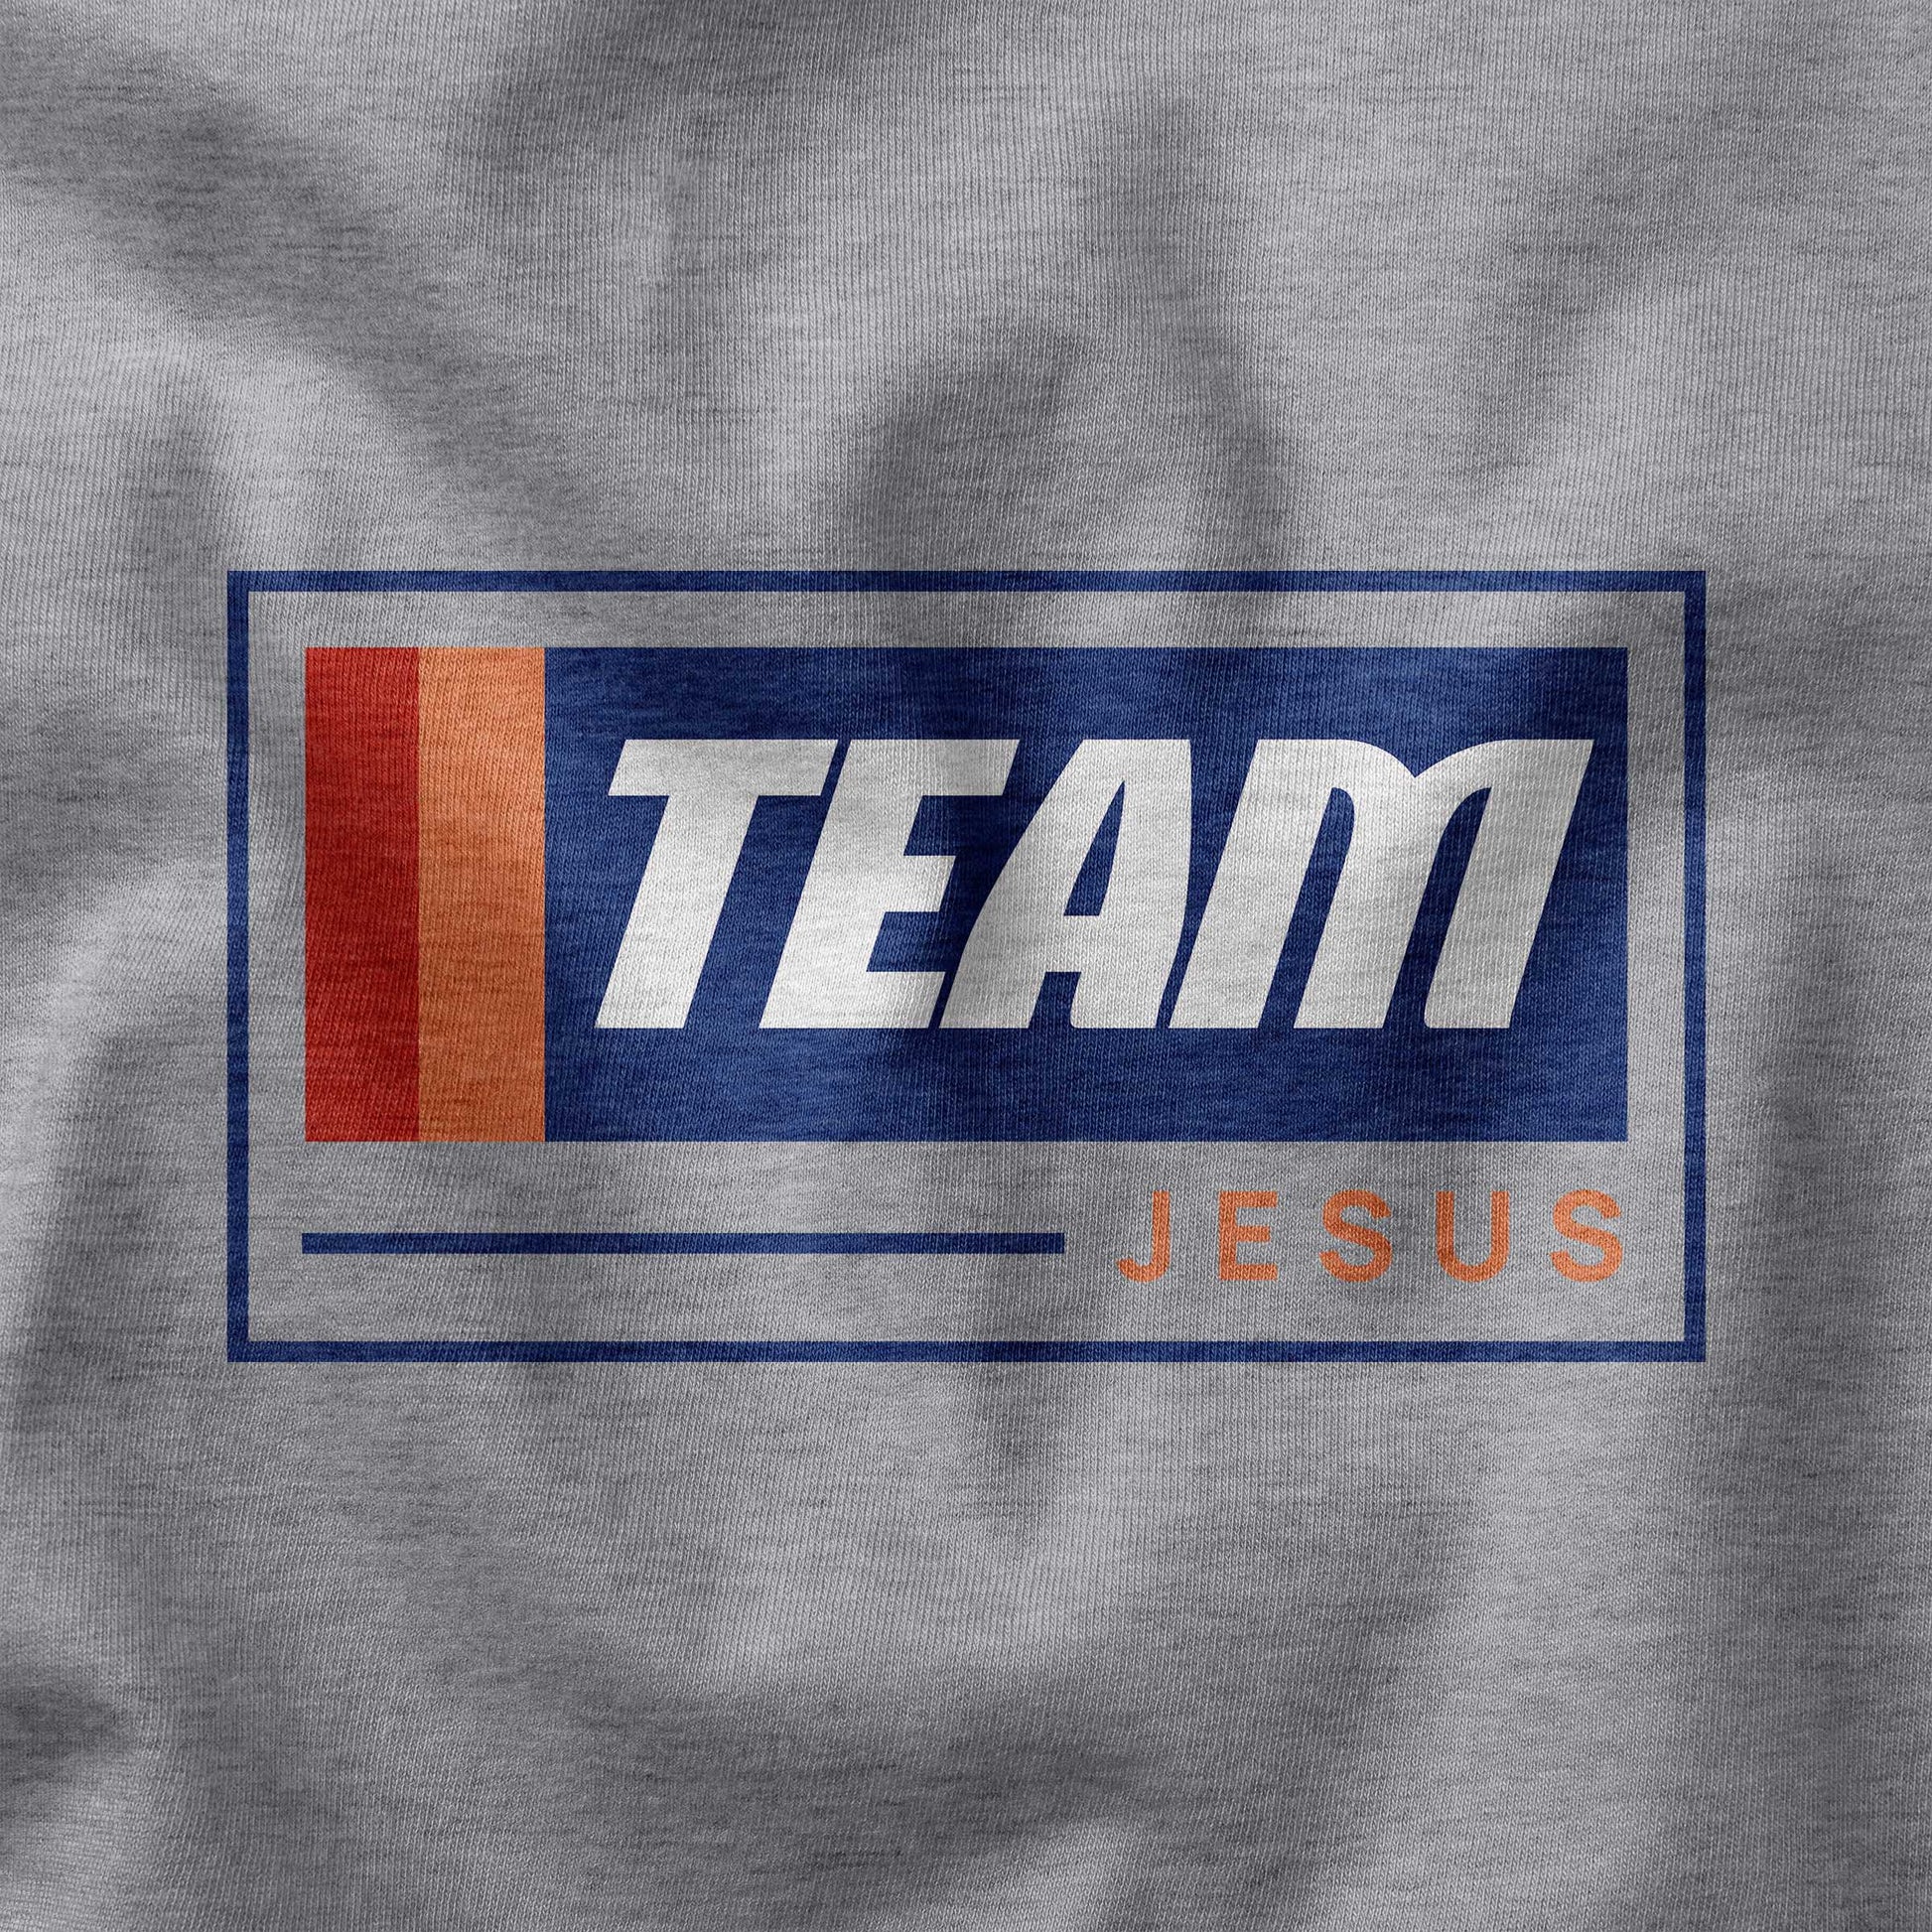 Team Jesus racing t-shirt closeup